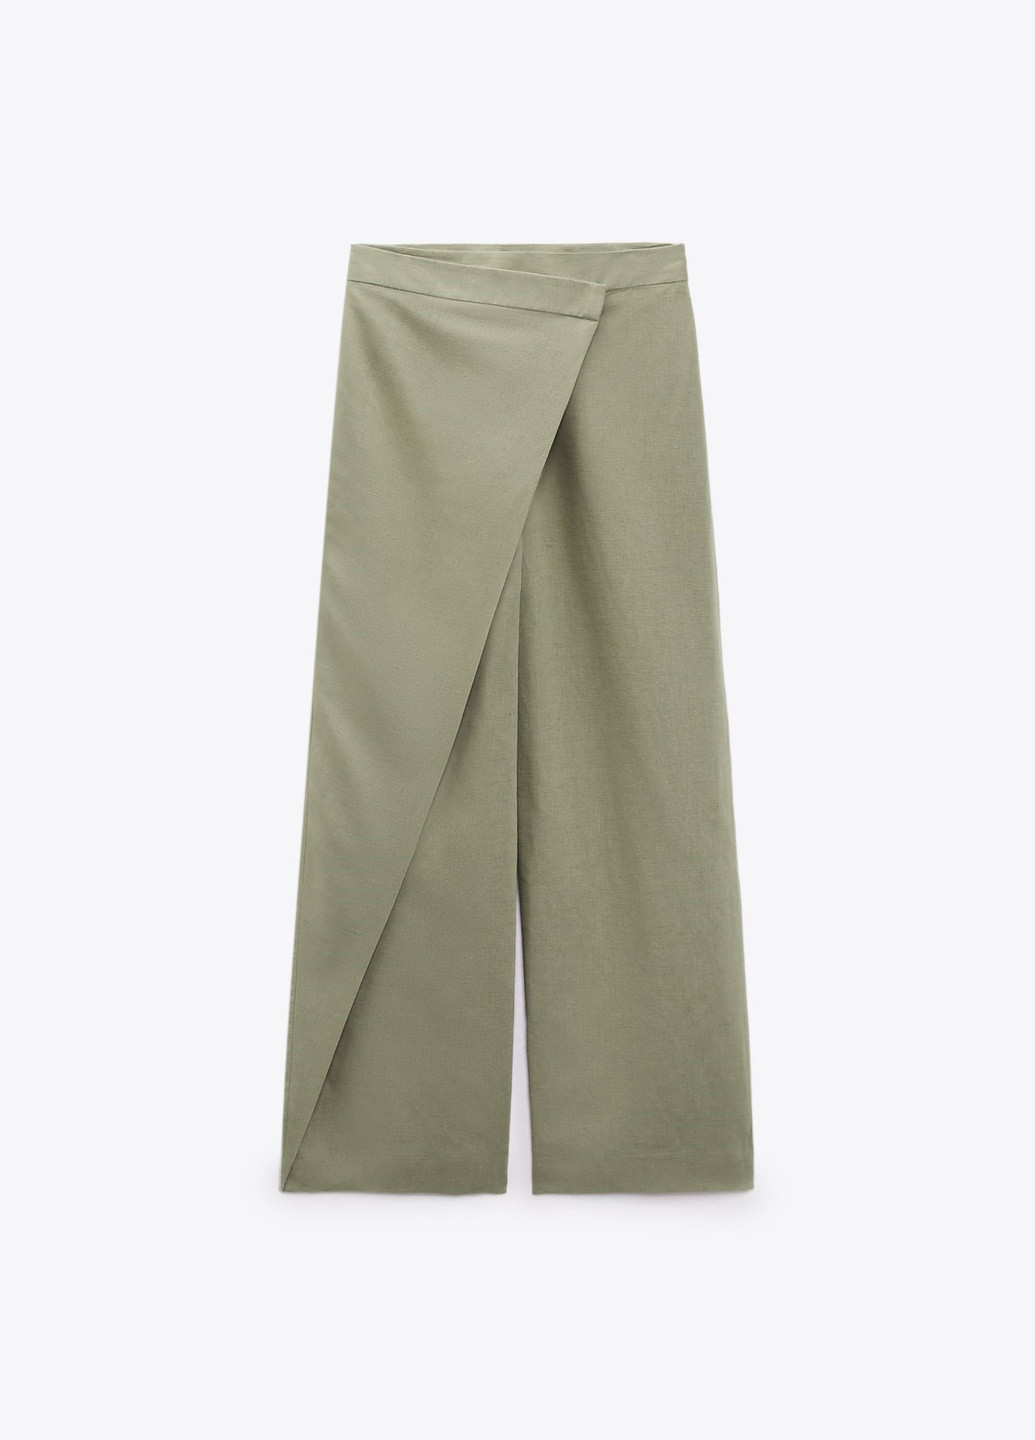 Хаки классические демисезонные брюки Zara